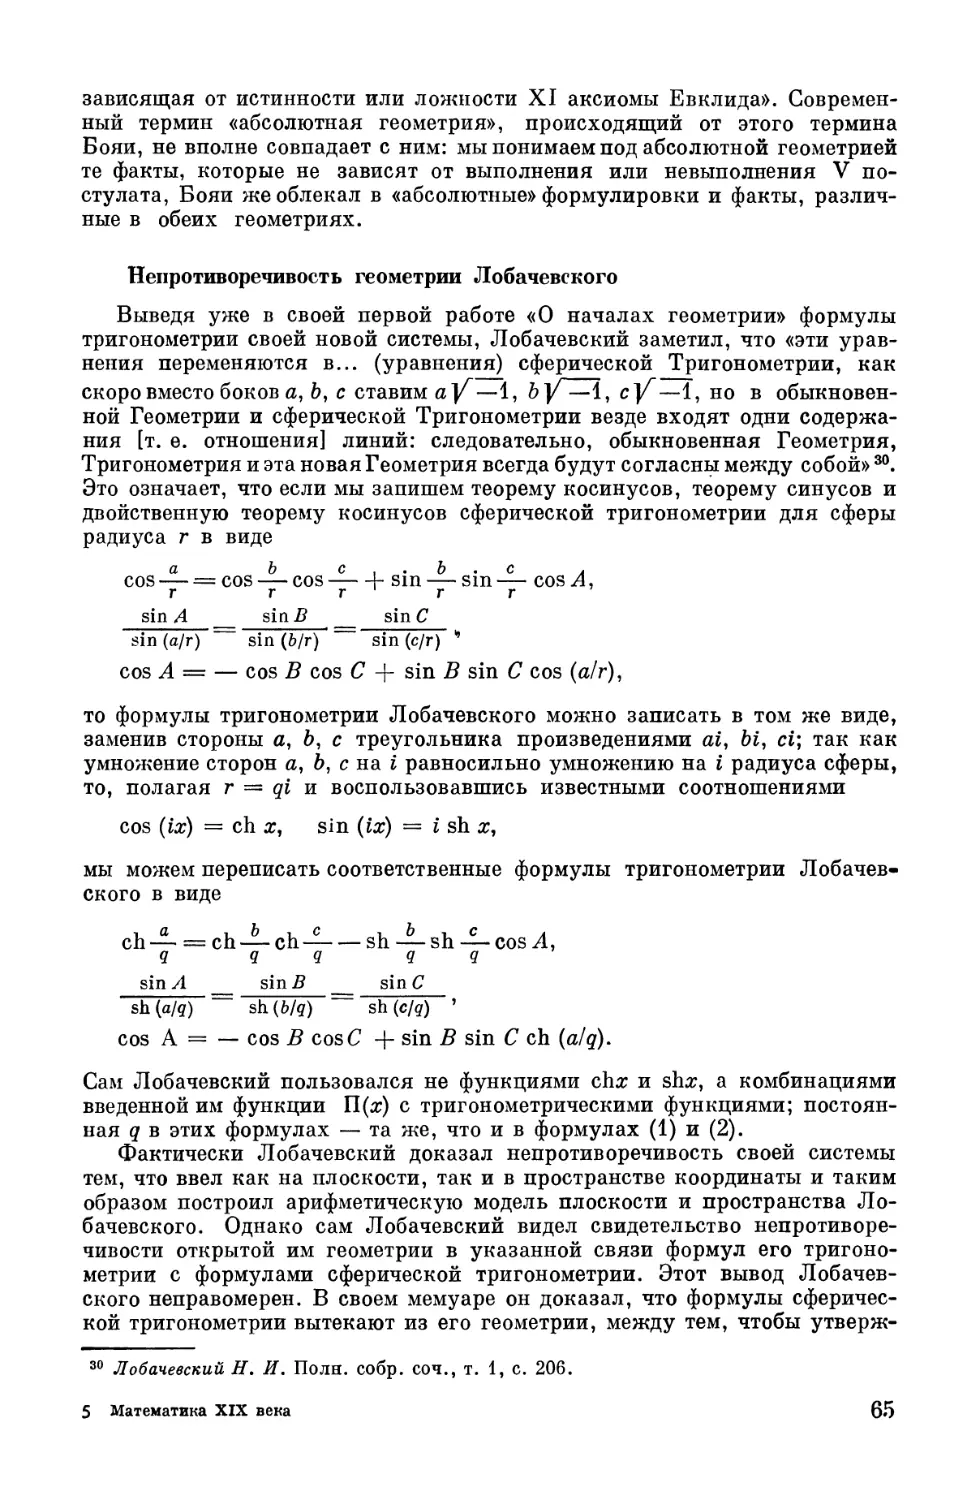 Непротиворечивость геометрии Лобачевского